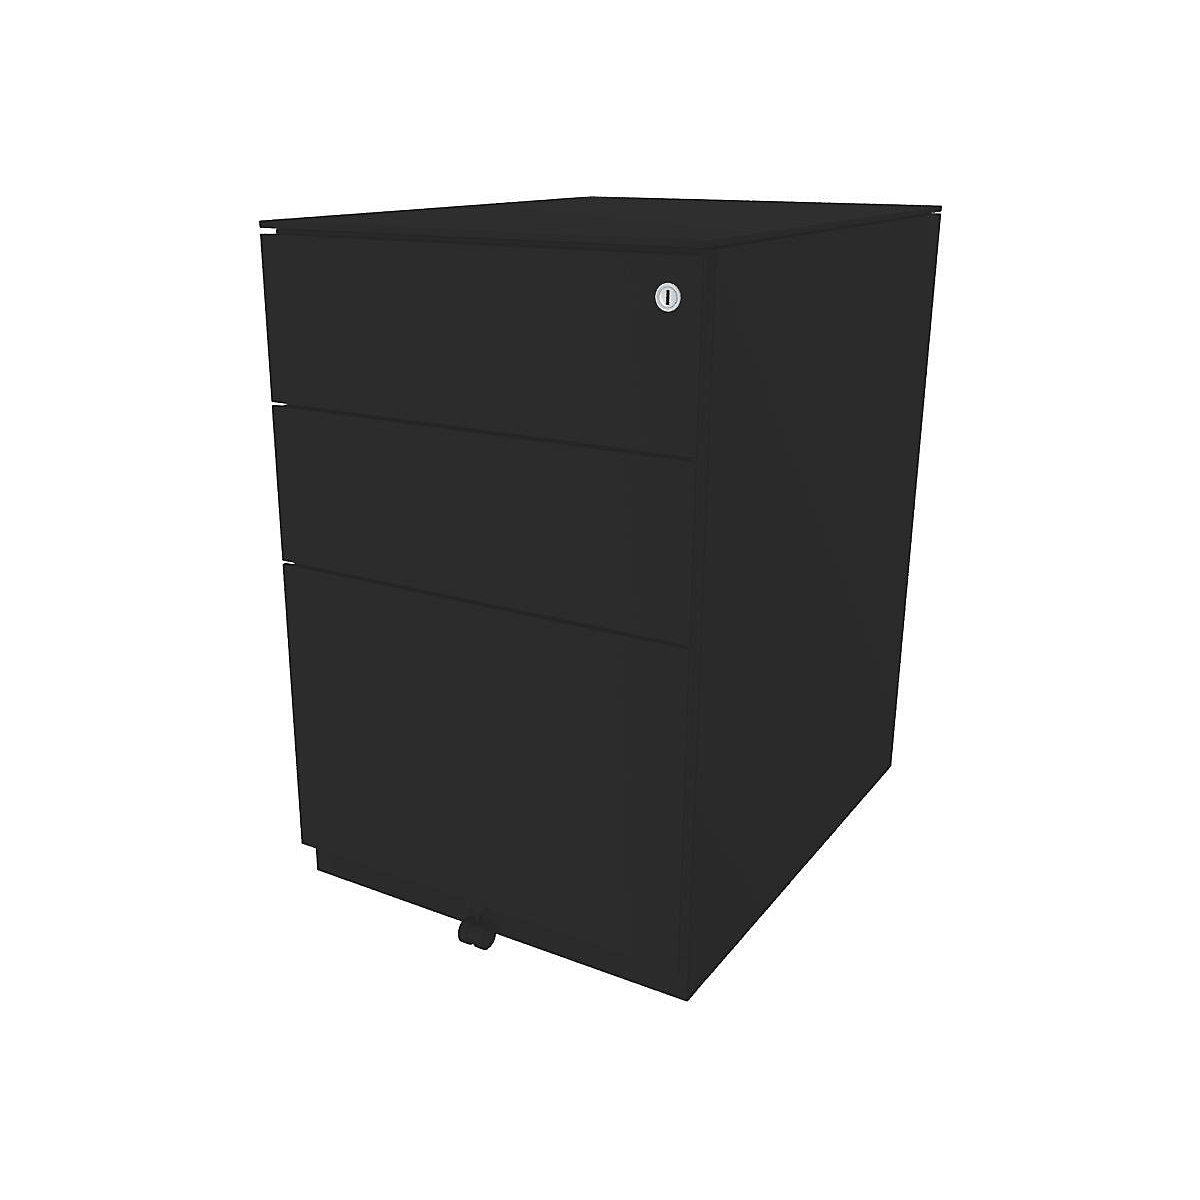 Pokretni ladičar Note™, s 2 univerzalne ladice, 1 element za vješanje registratora – BISLEY, VxŠxD 652 x 420 x 565 mm, s vrhom, u crnoj boji-1